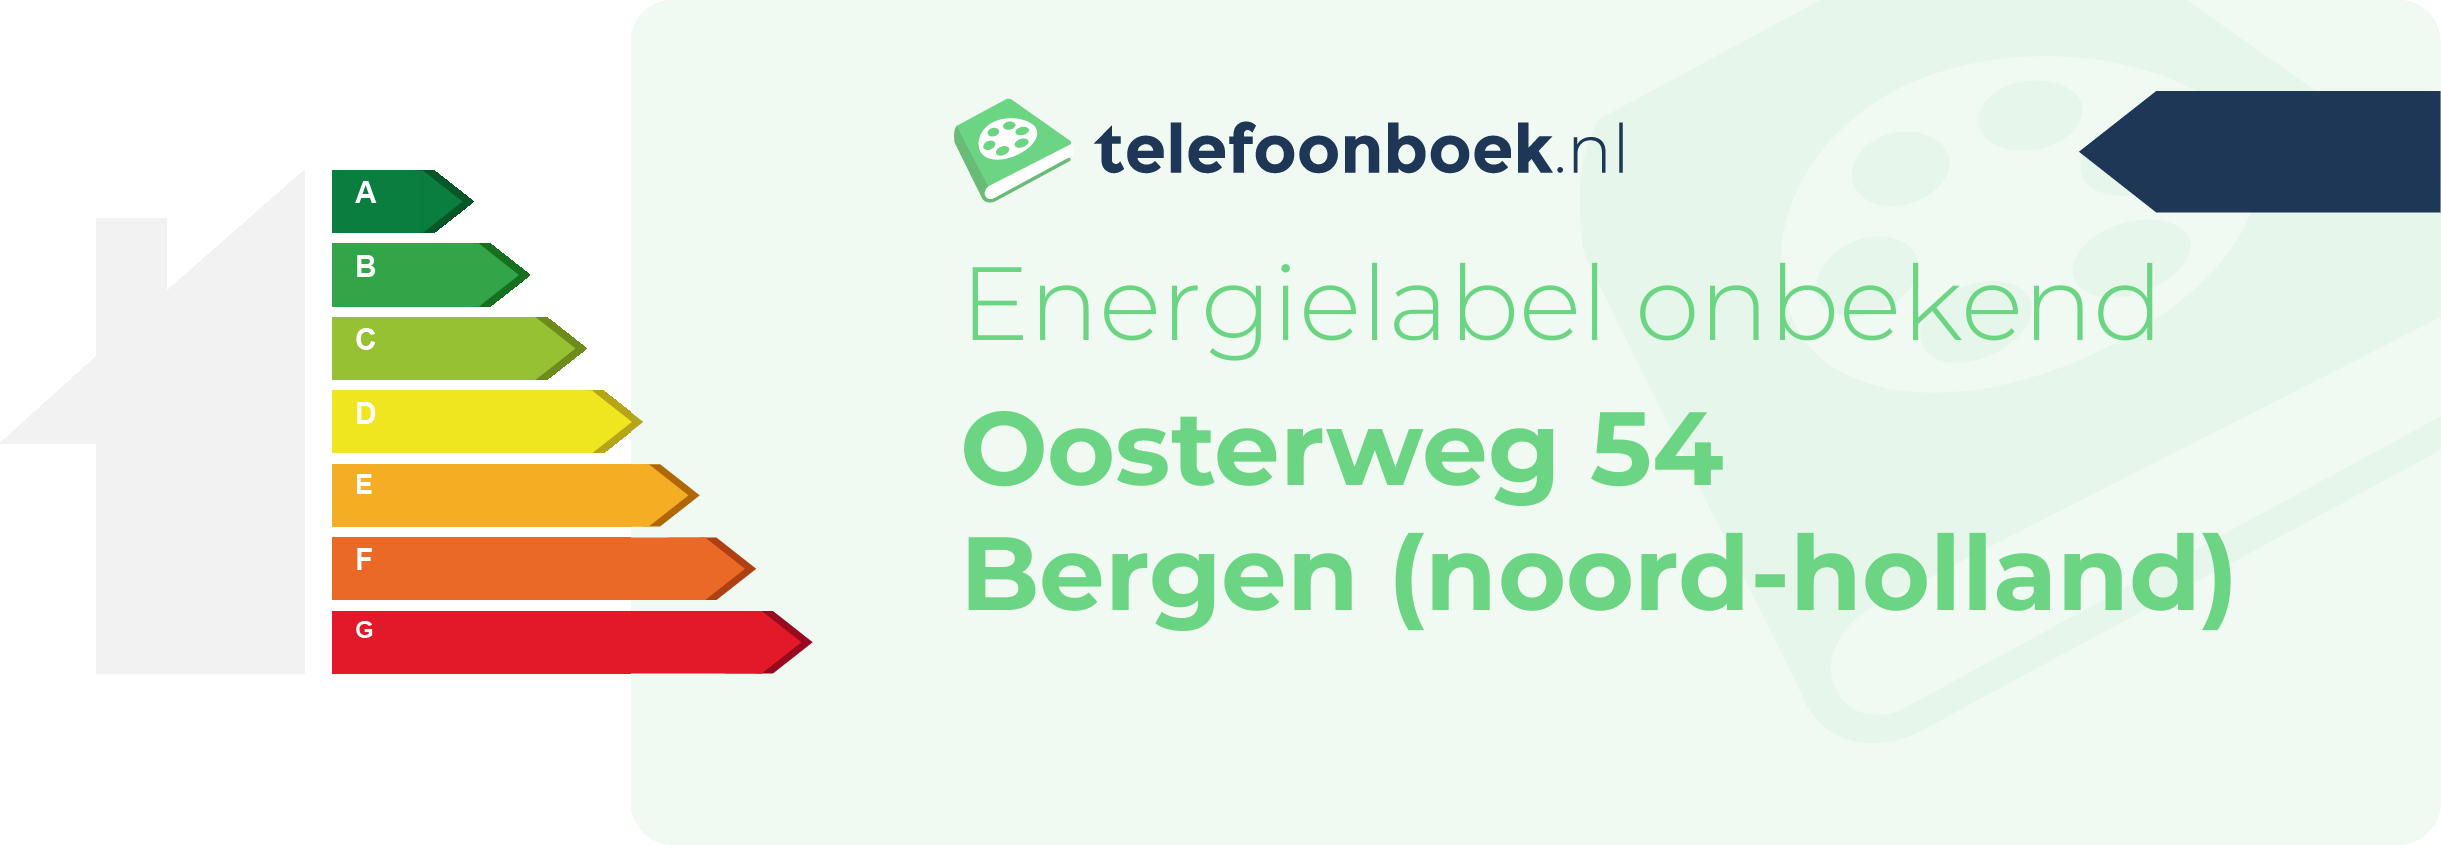 Energielabel Oosterweg 54 Bergen (Noord-Holland)